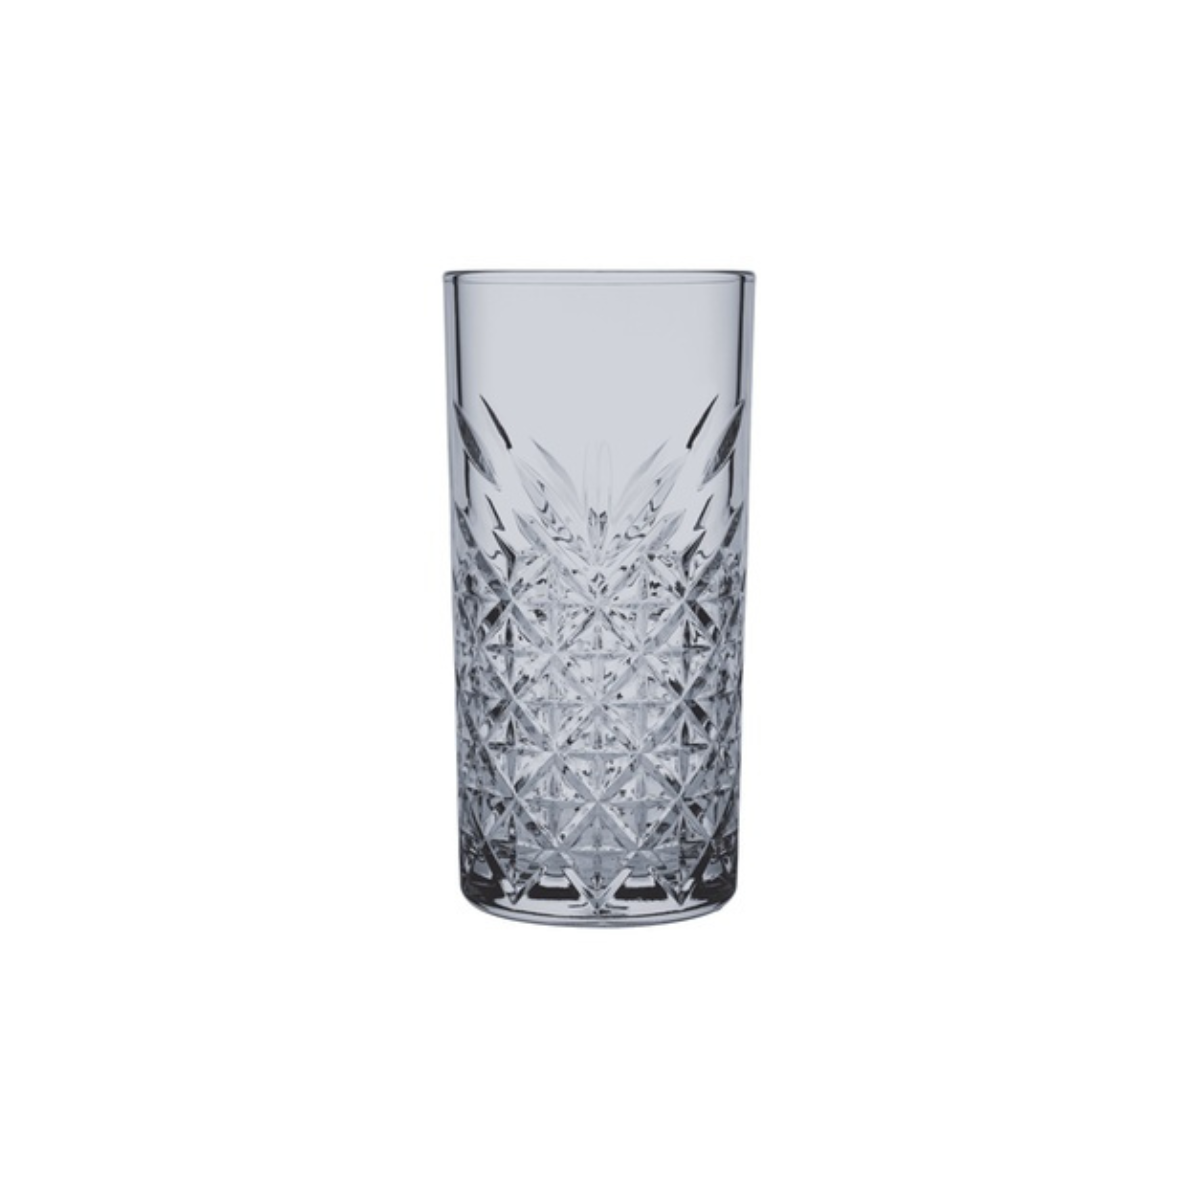 Pasabahce Timeless Grey/Turq 4pcs 450ml Glass Set - 52800